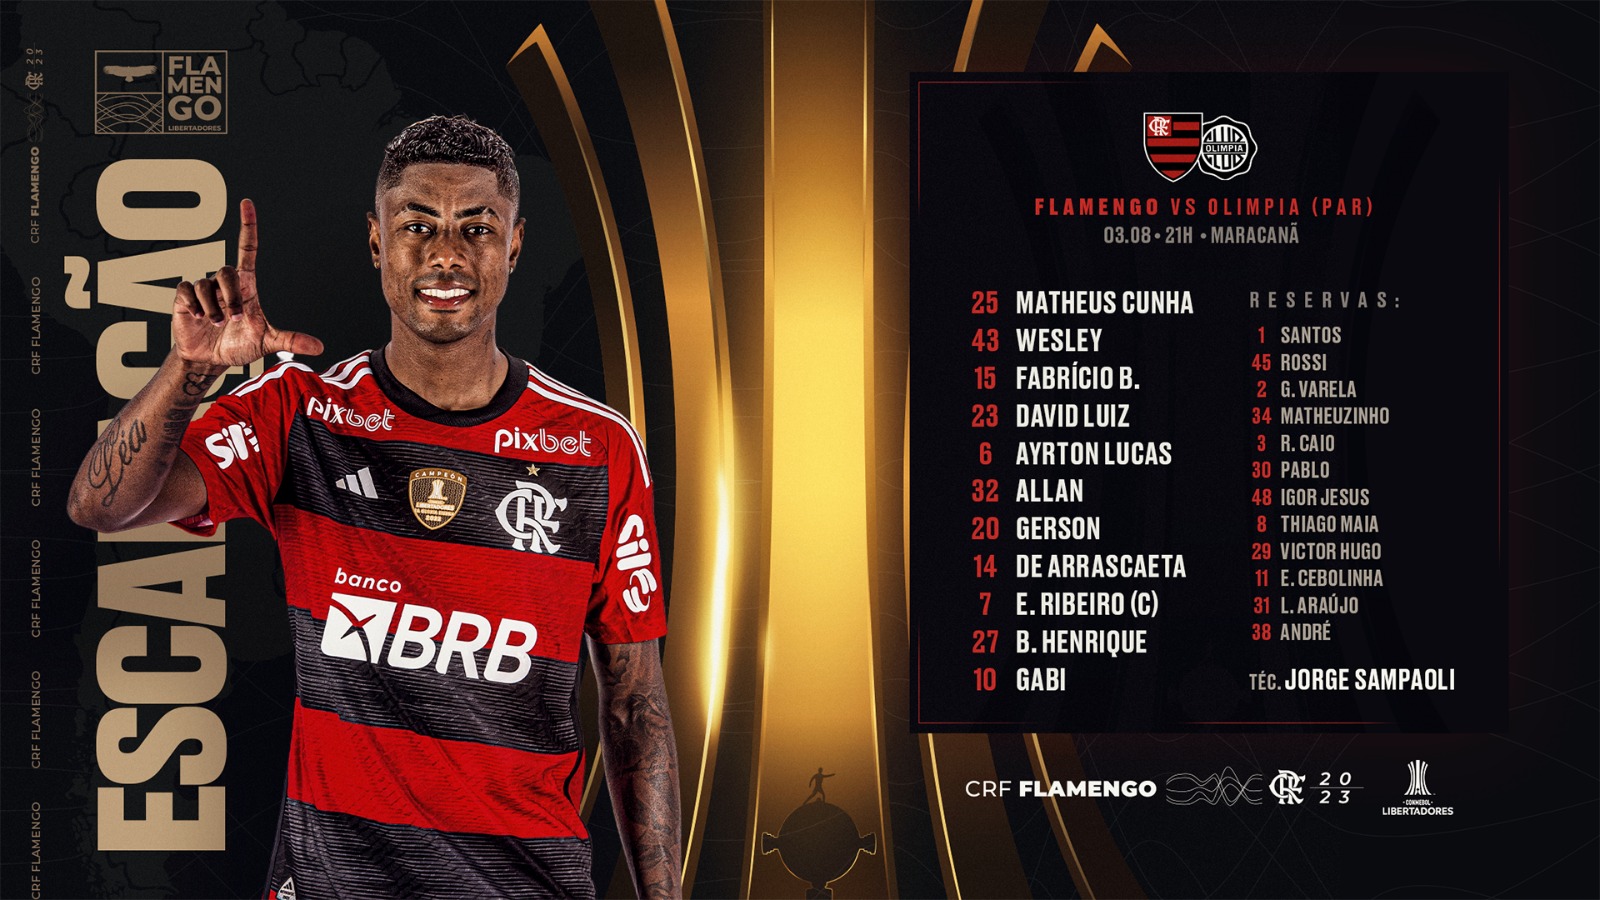 Jogo de quinta-feira (03/08) - Flamengo x Olimpia (Libertadores)